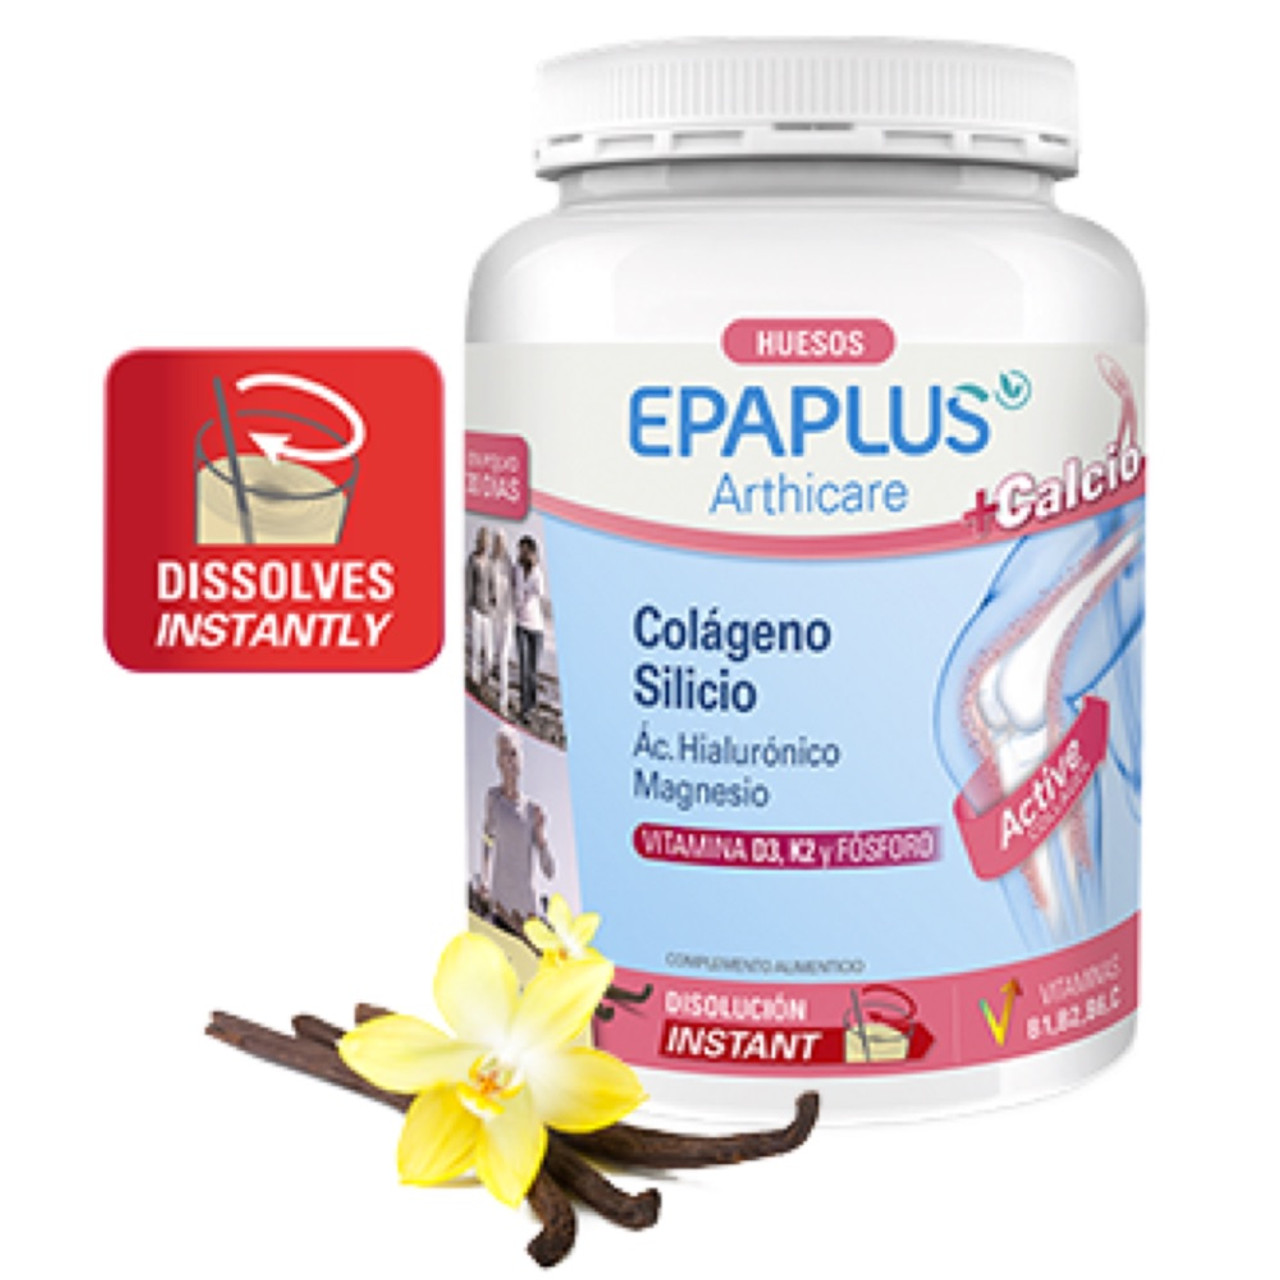 Epaplus Arthicare Redensify Collagen Silicon Vanilla Flavor